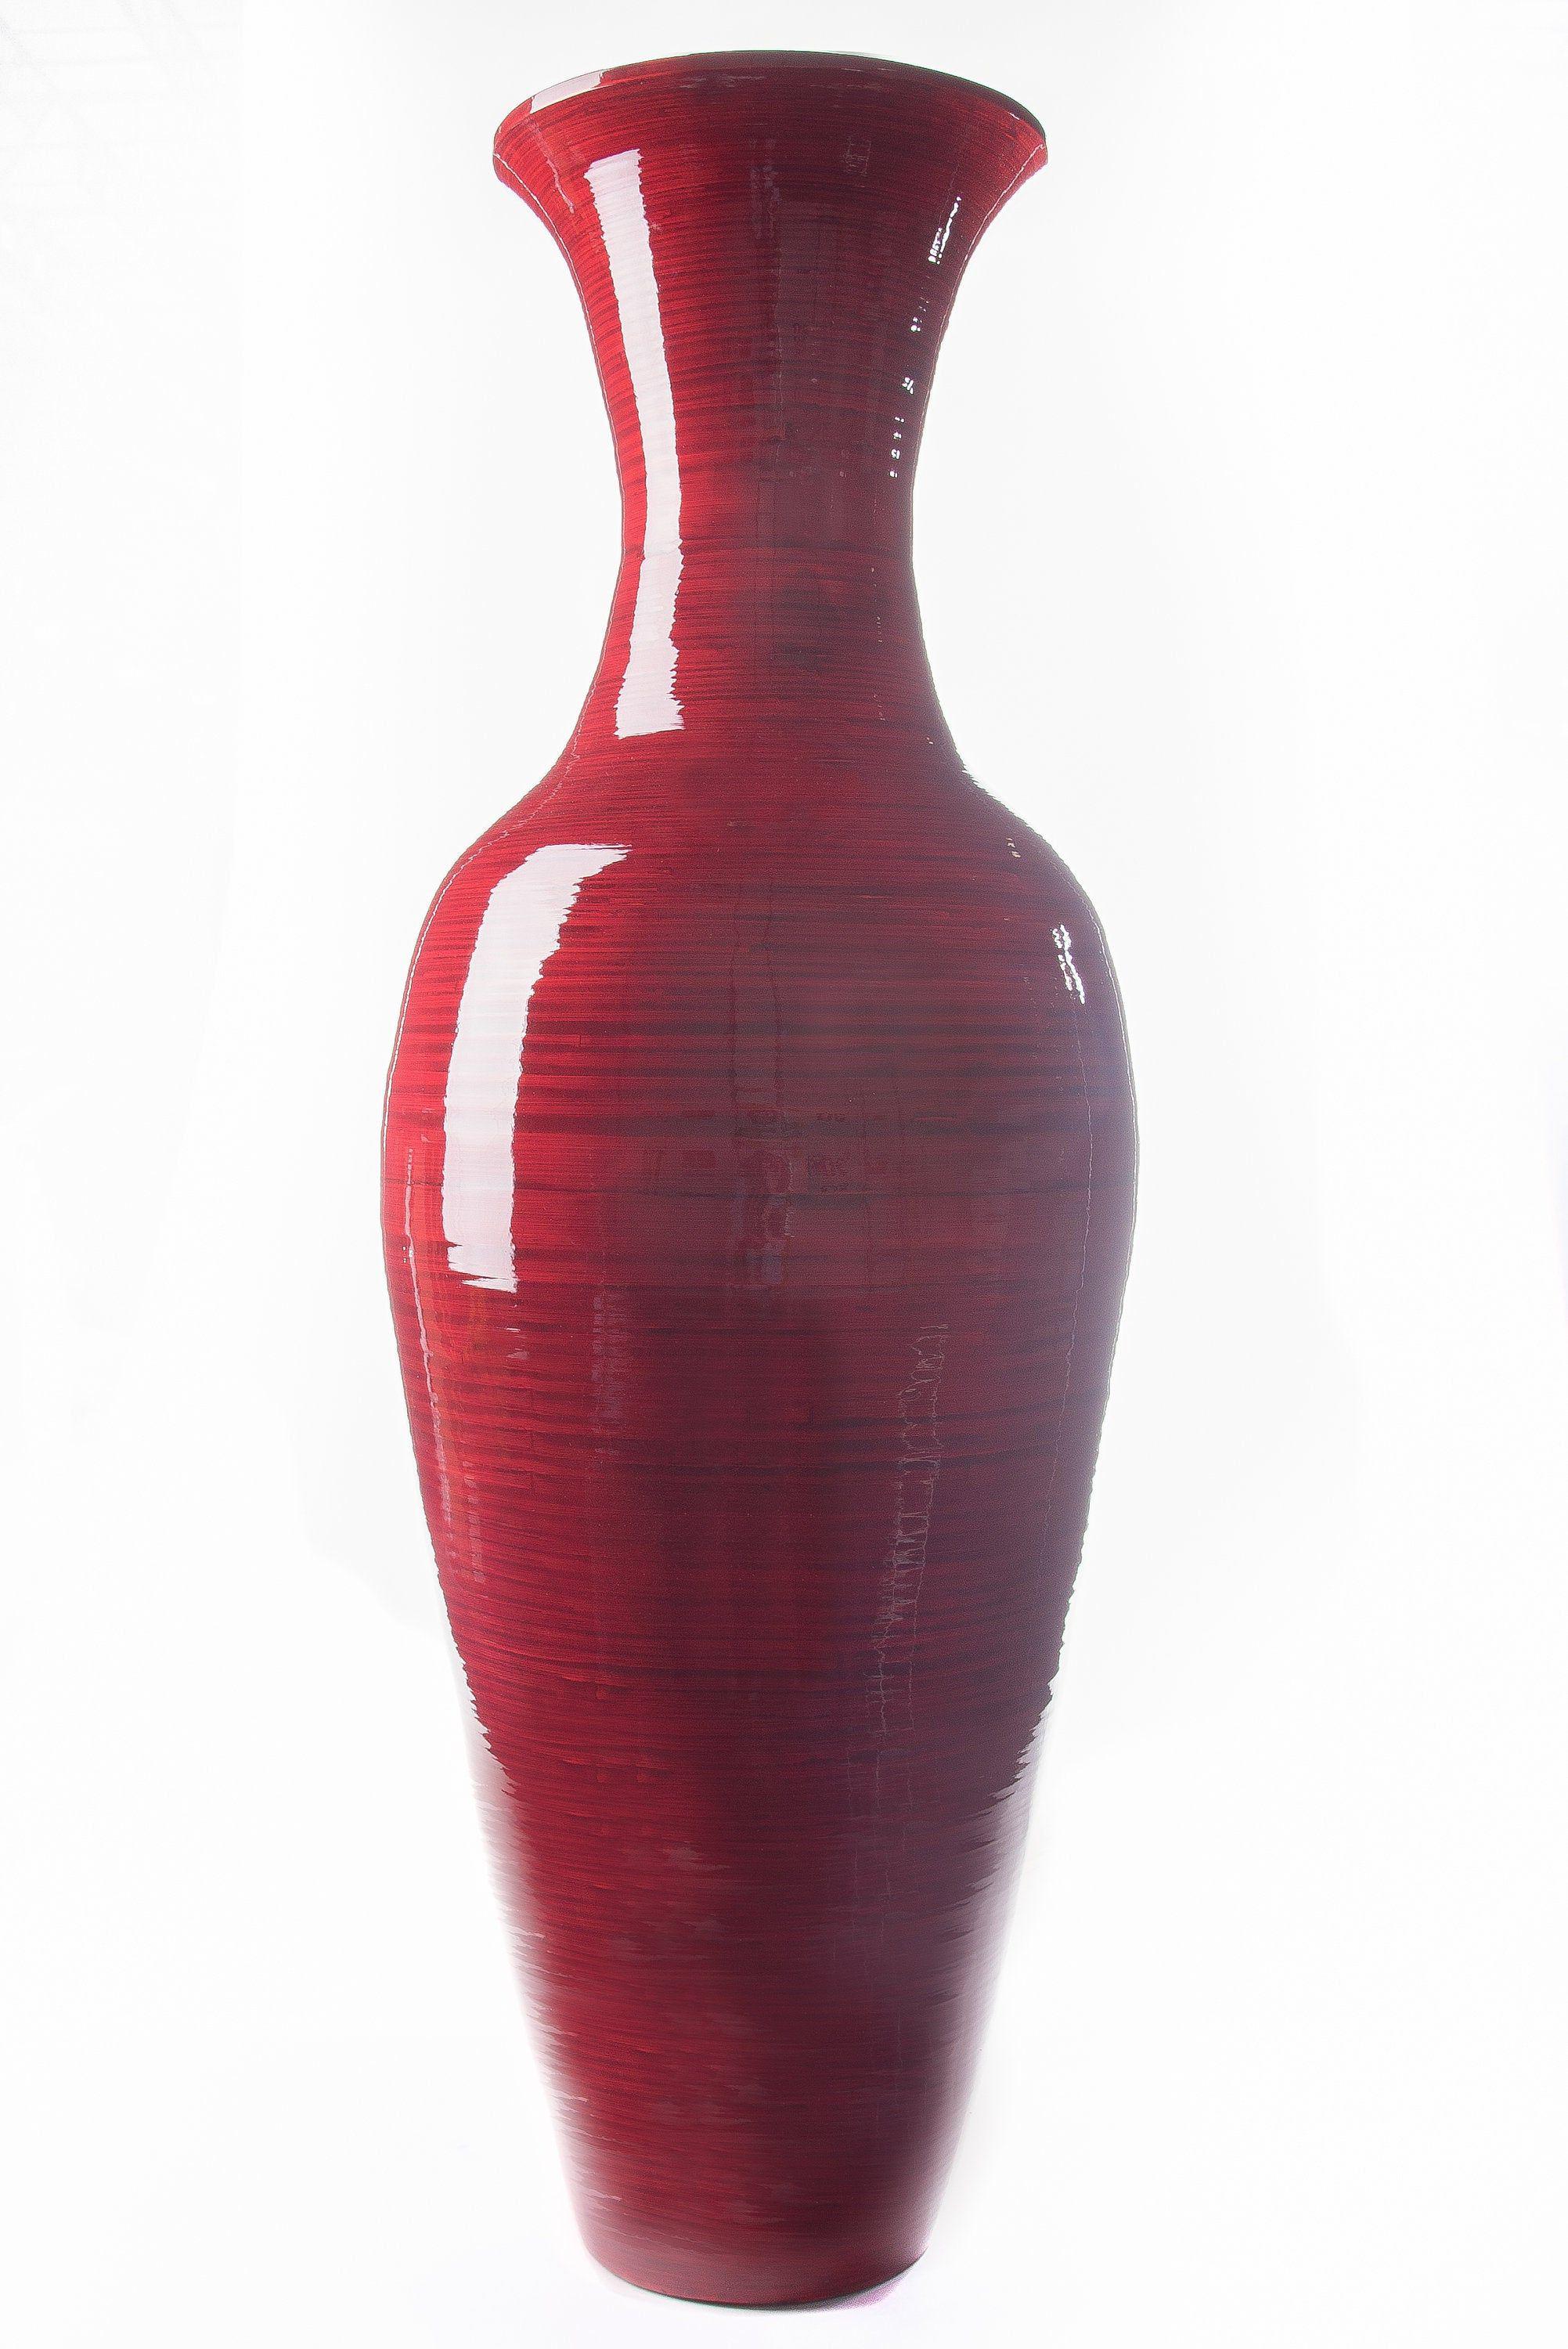 جدیدترین مدلهای گلدان چوب بامبو (m306708)|ایده ها